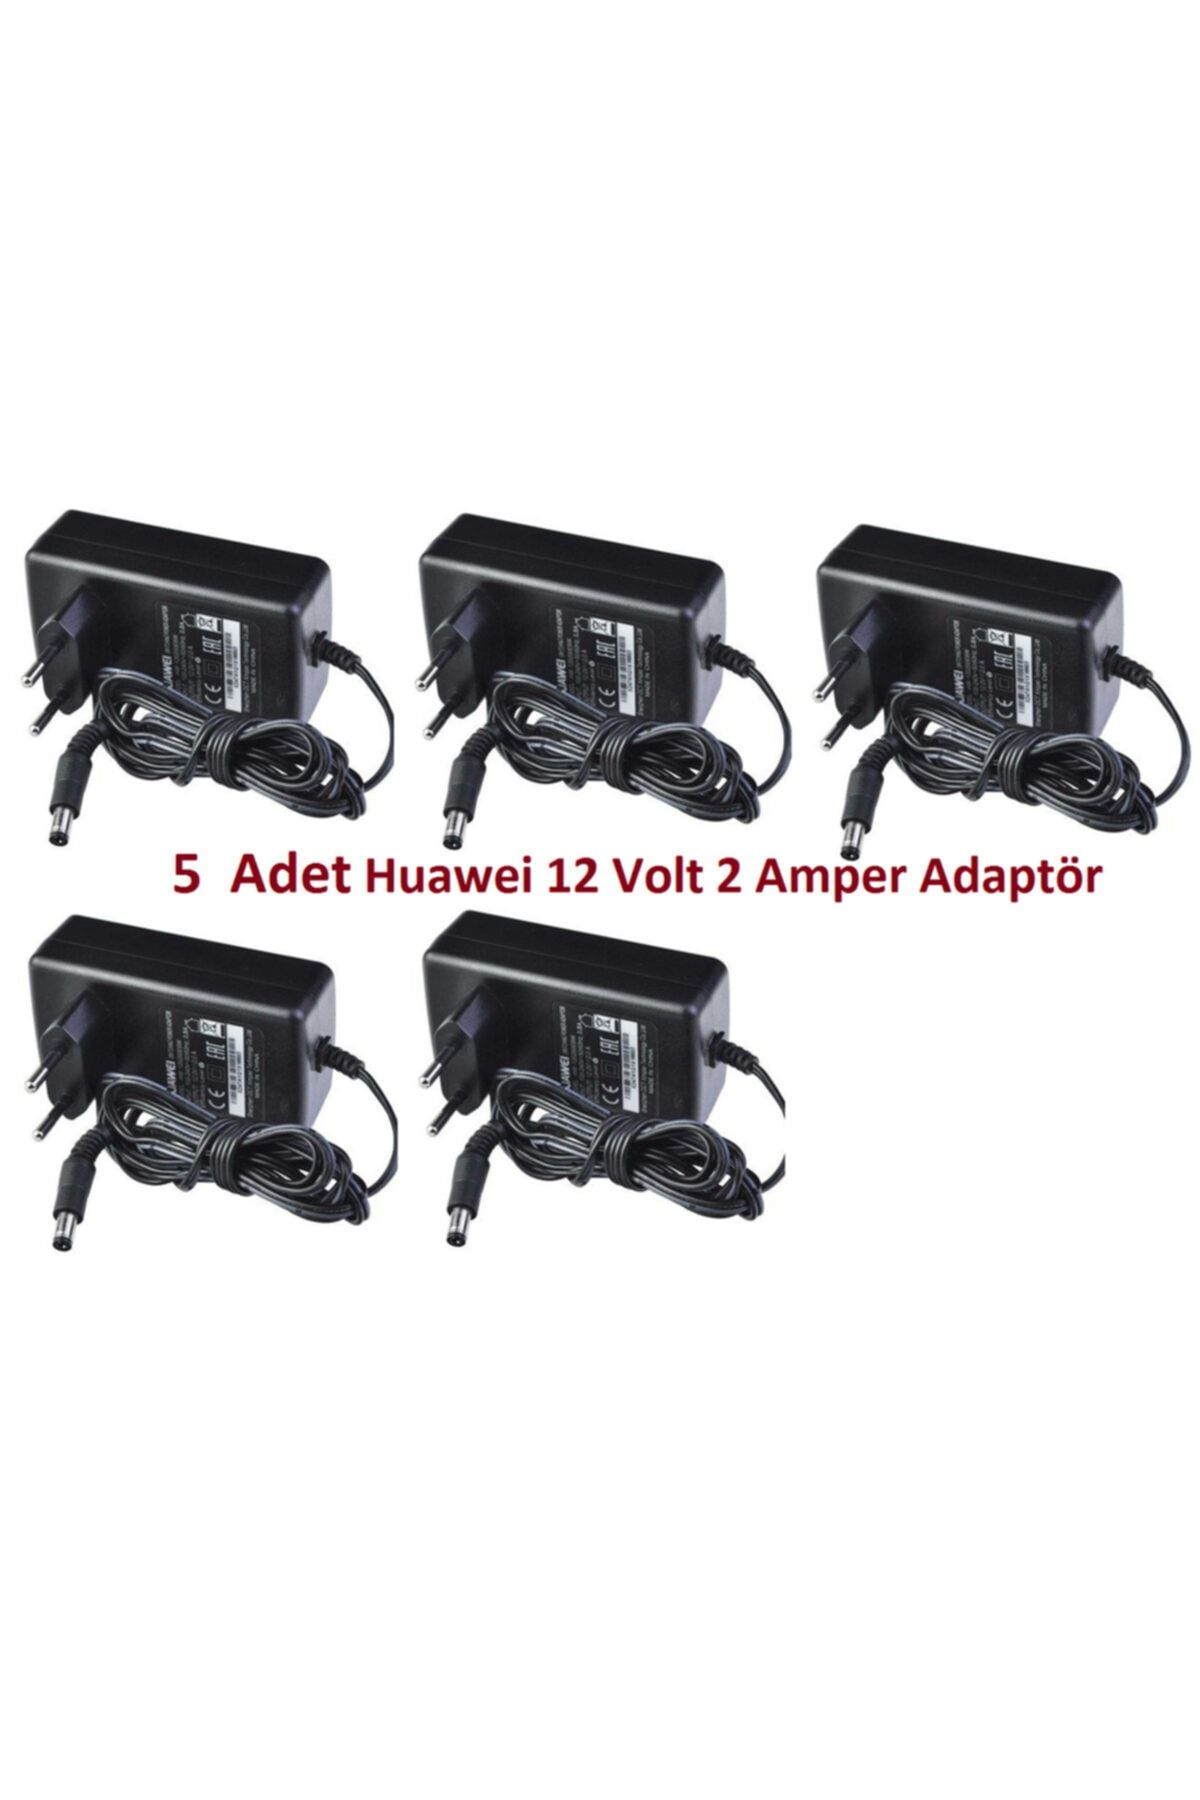 Huawei Hw 120200e6w 5 Adet 12v - 2a Modem Adaptör - Siyah